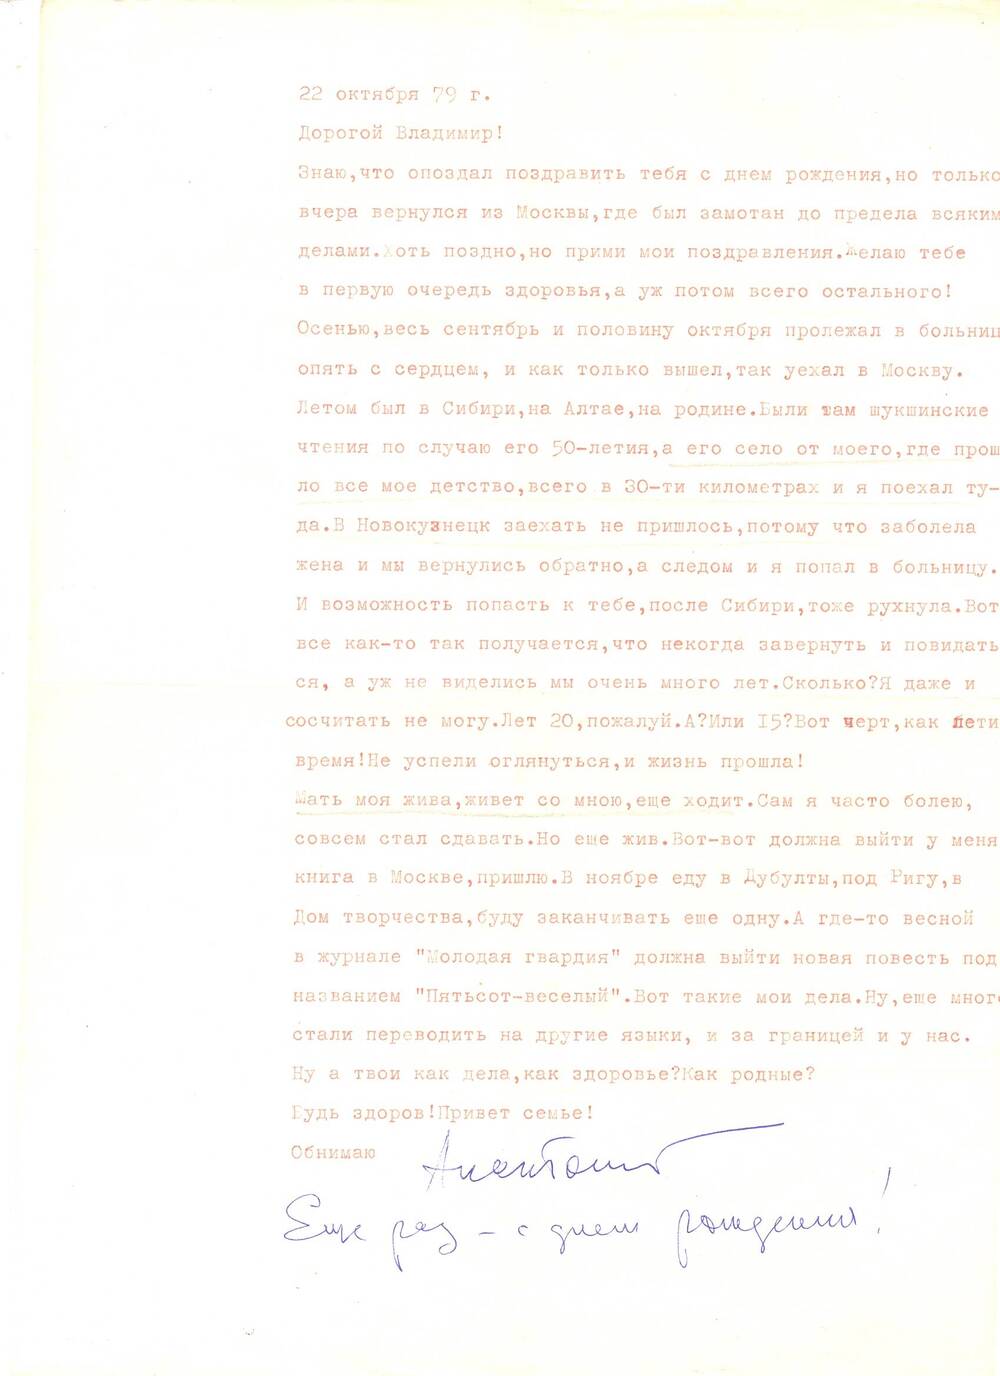 Письмо от А.П. Соболева к В.В. Умрихину от 22 октября 1979.